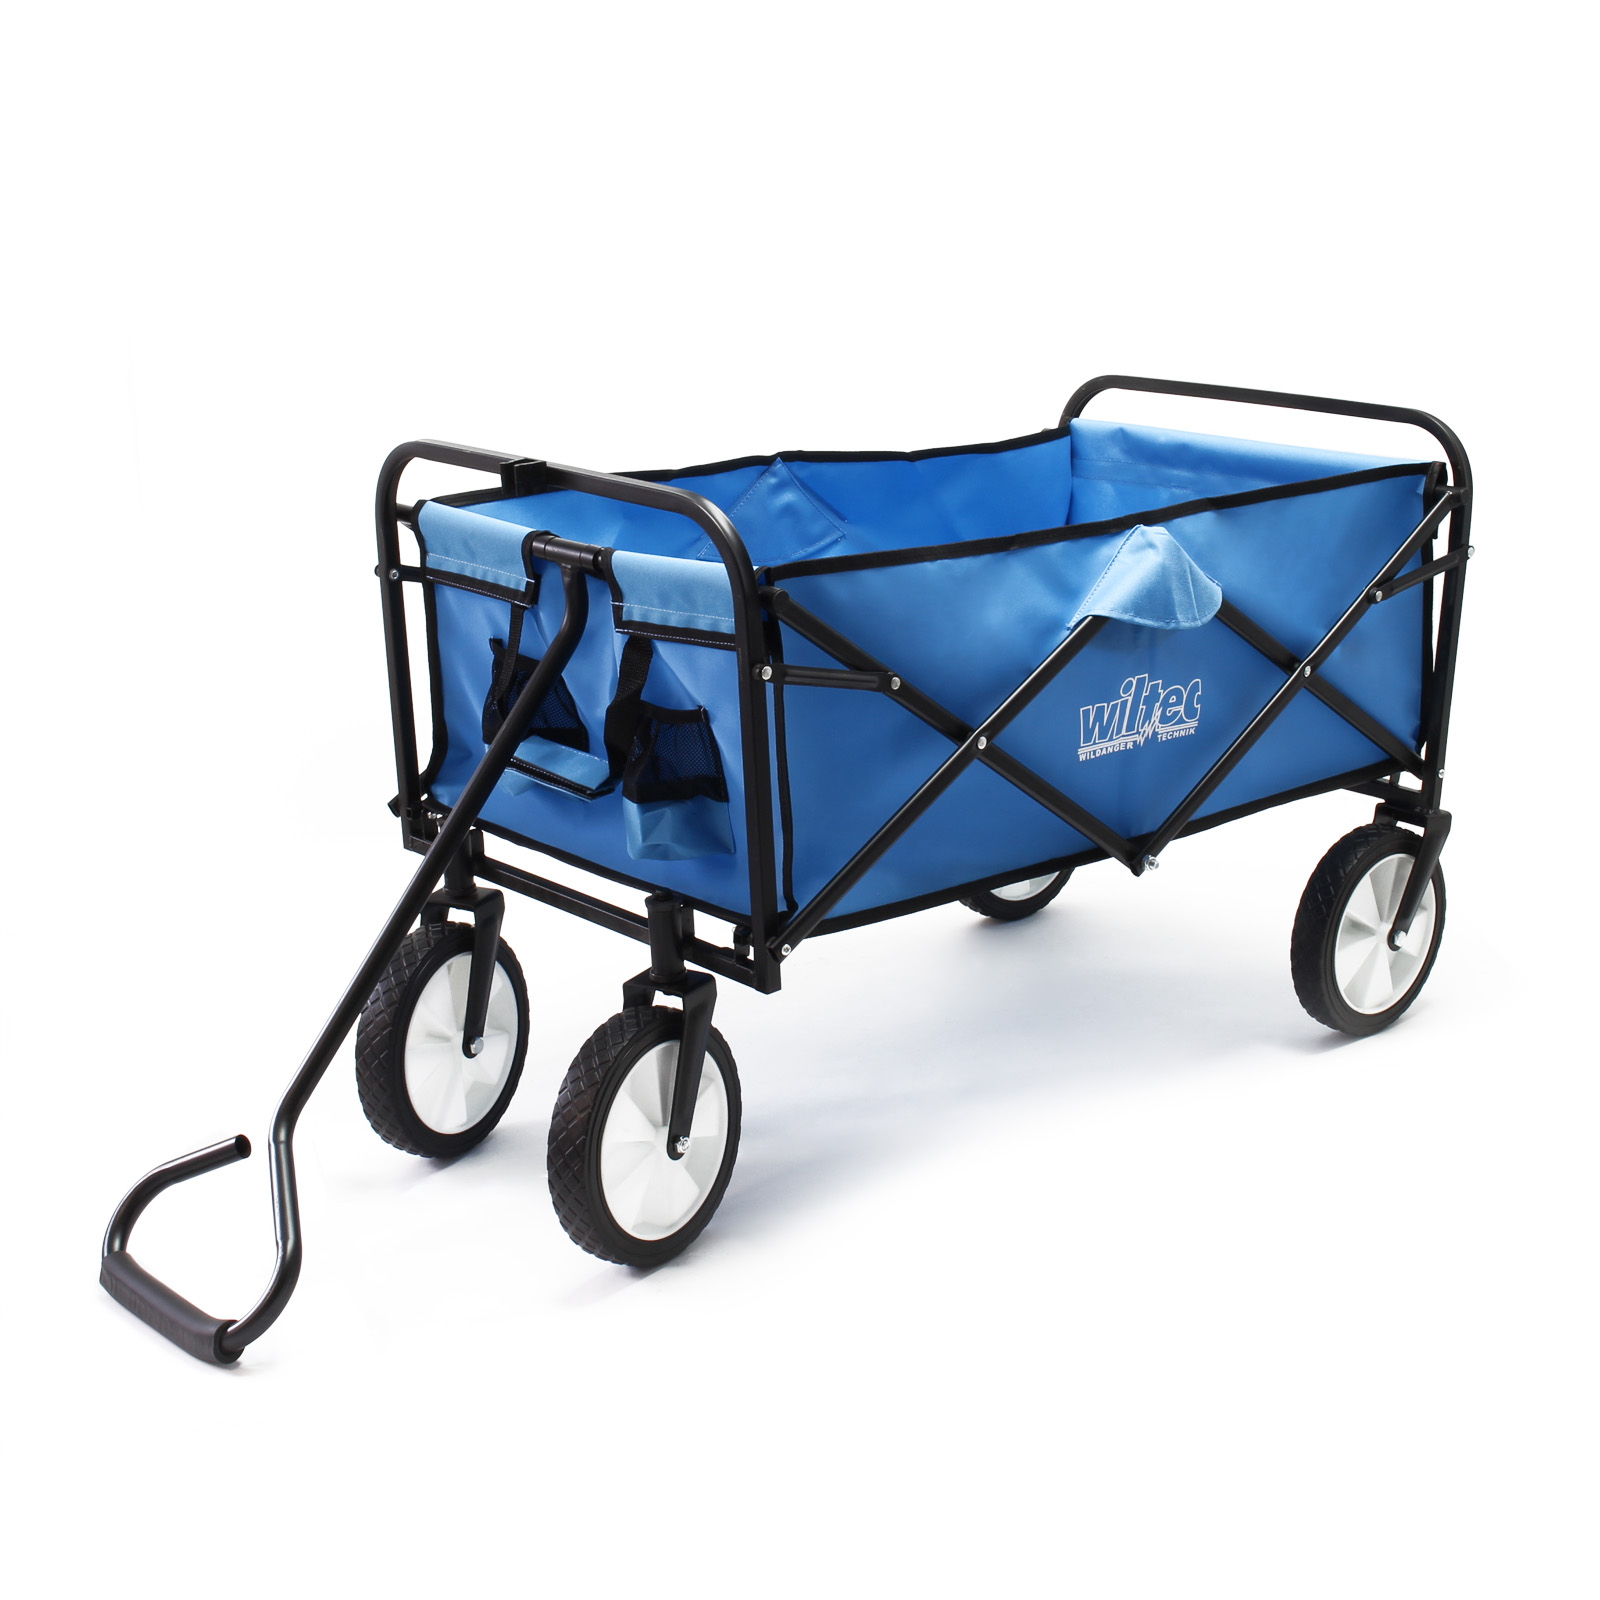 Chariot de jardin Chariot de transport, Pliable, avec Roues en plastique  pour faciliter le transport, Capacité de charge maximale 80 kg acheter en  ligne à bas prix